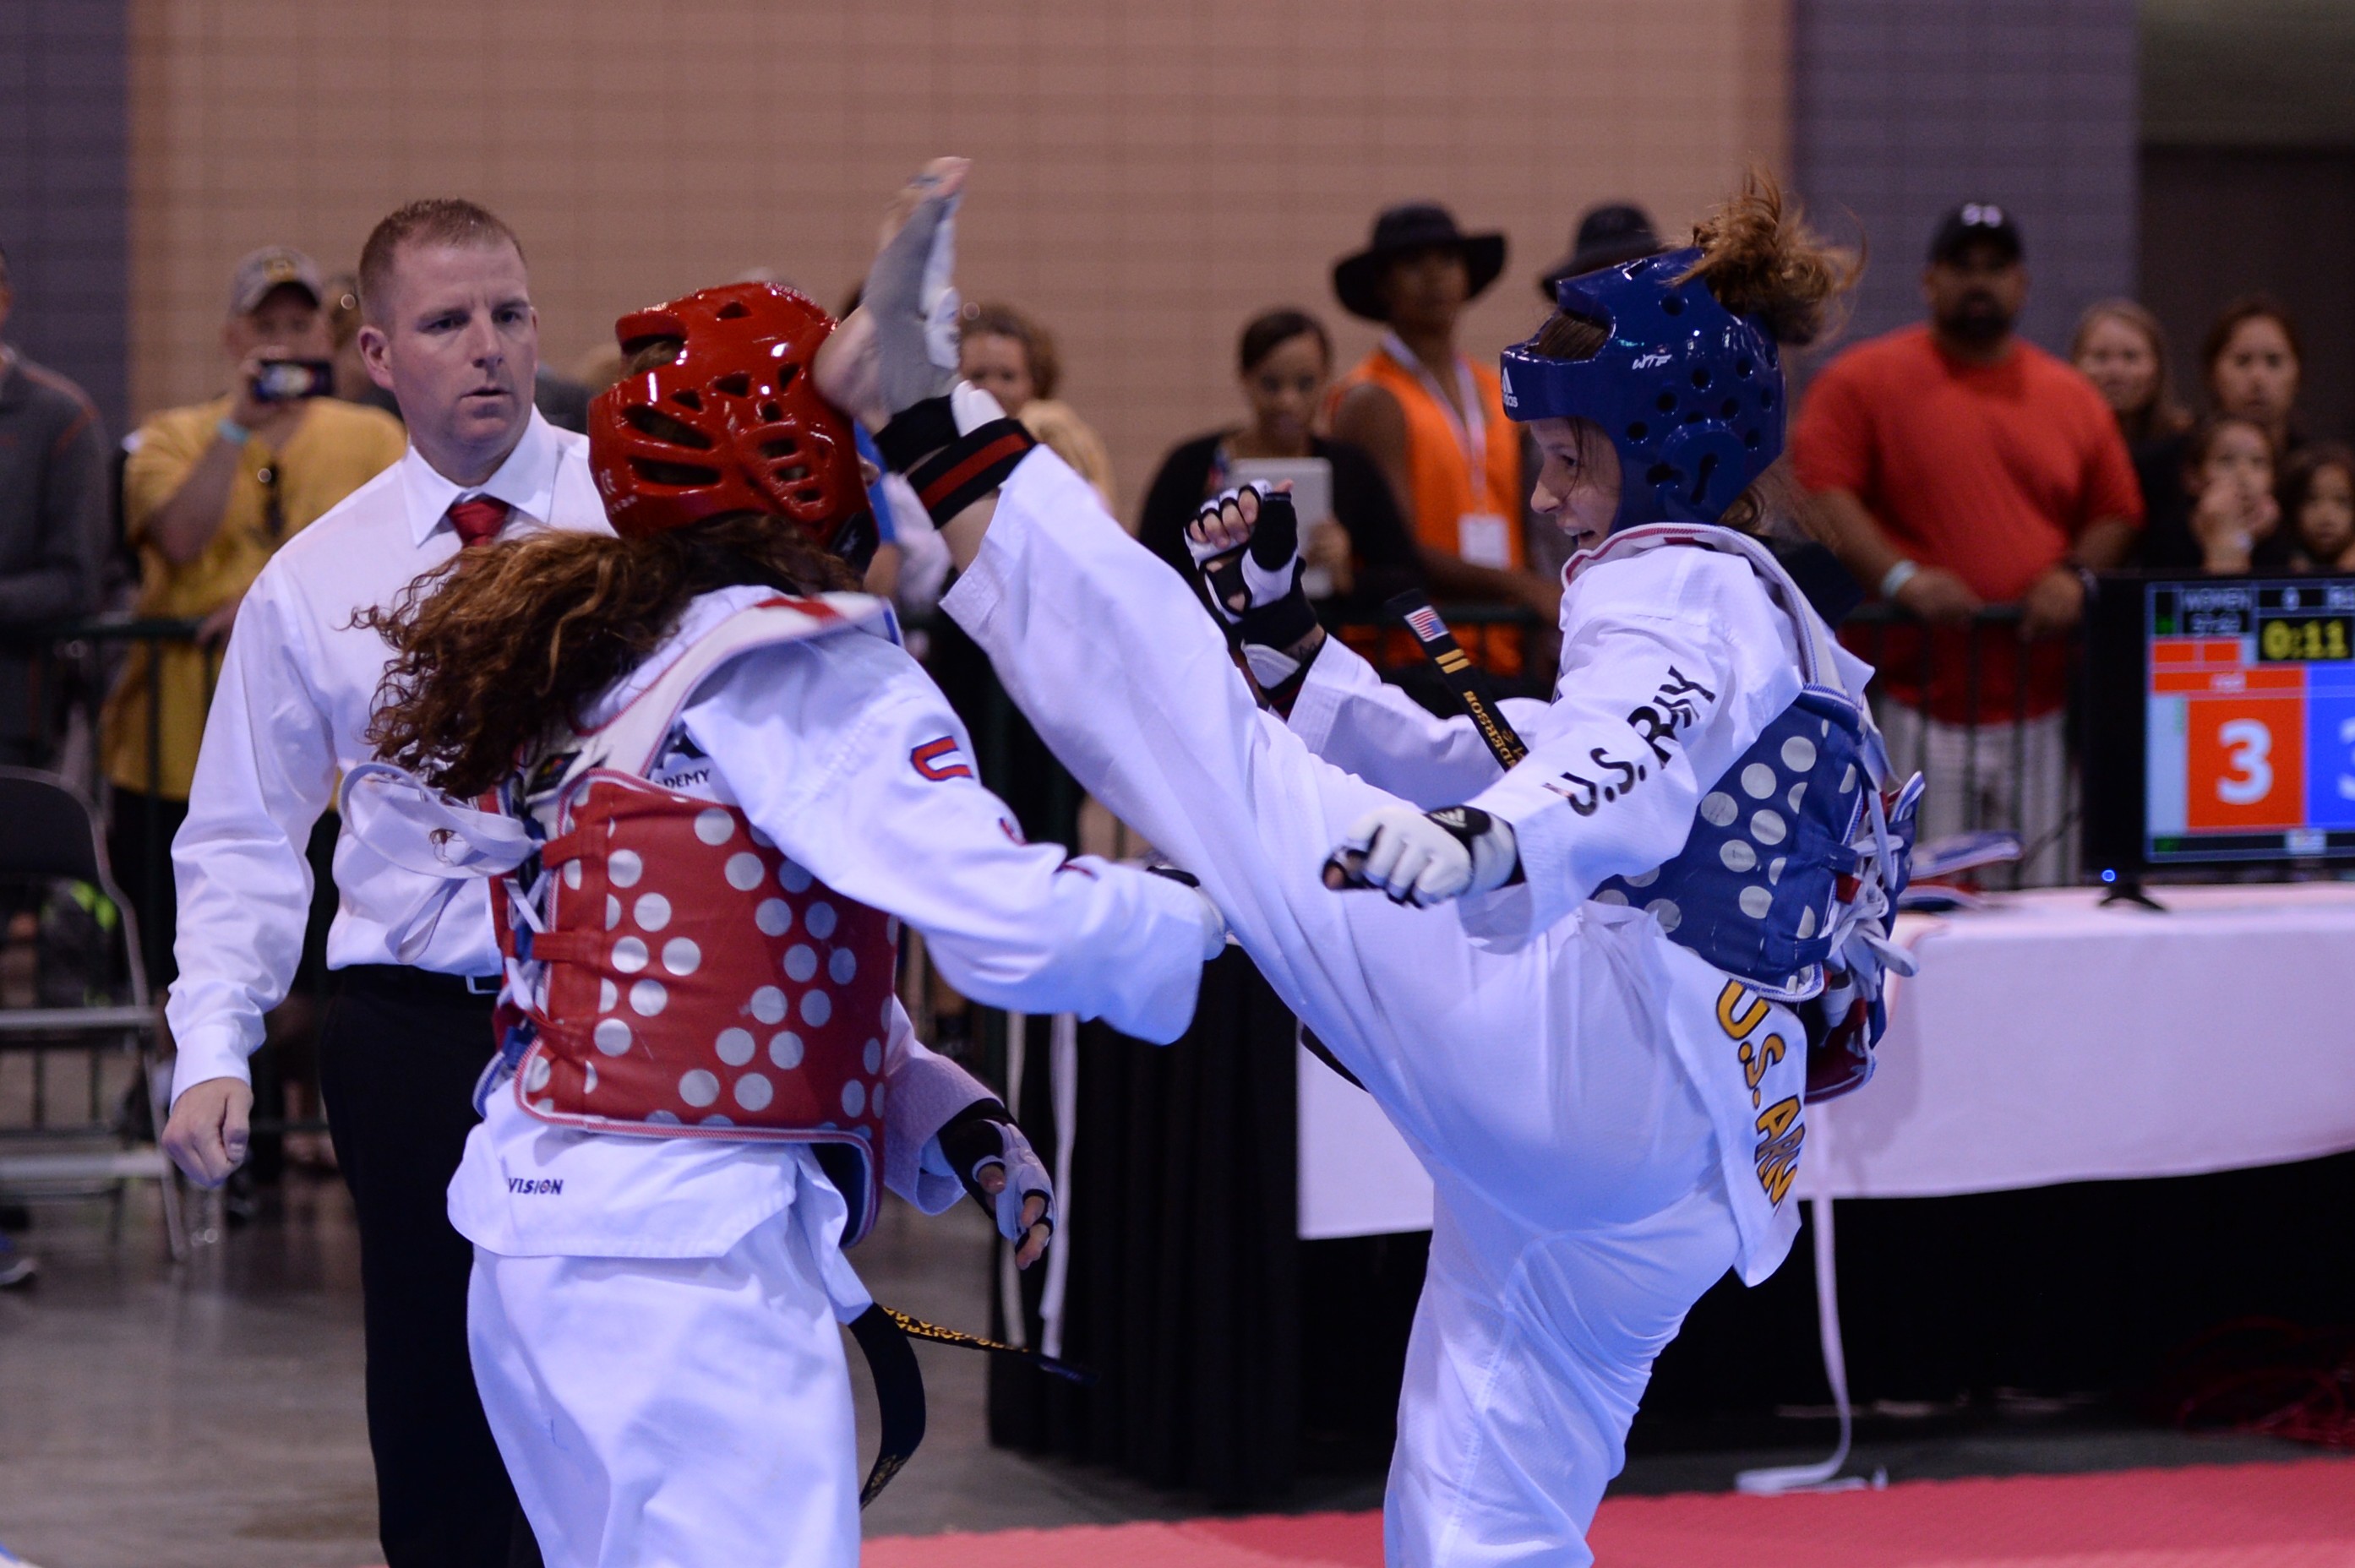 Medic kicks her way to medal at taekwondo championships Article The